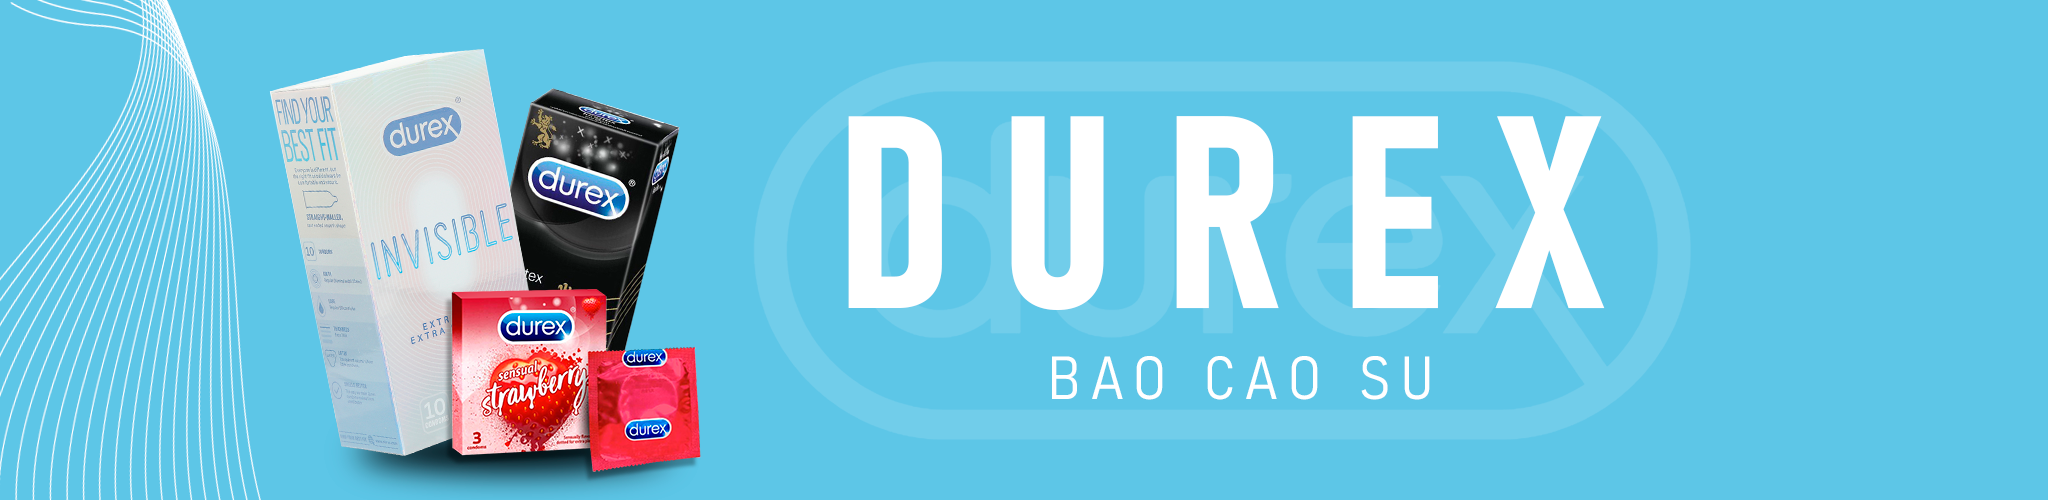 Bao Cao Su Durex